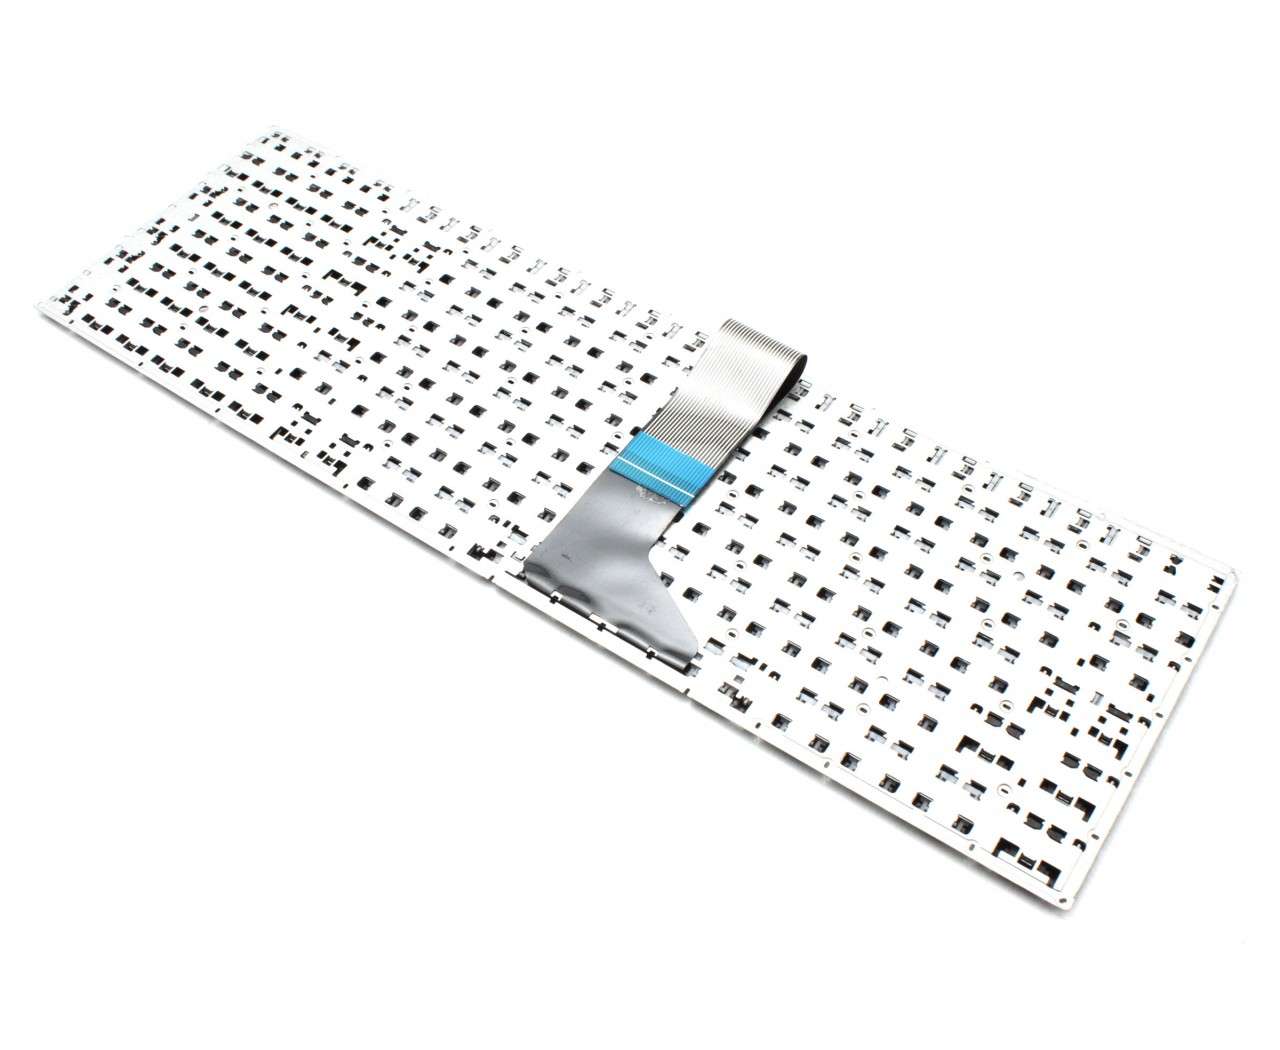 Tastatura Neagra cu Taste Rosii Asus VivoBook X201E layout US fara rama enter mic